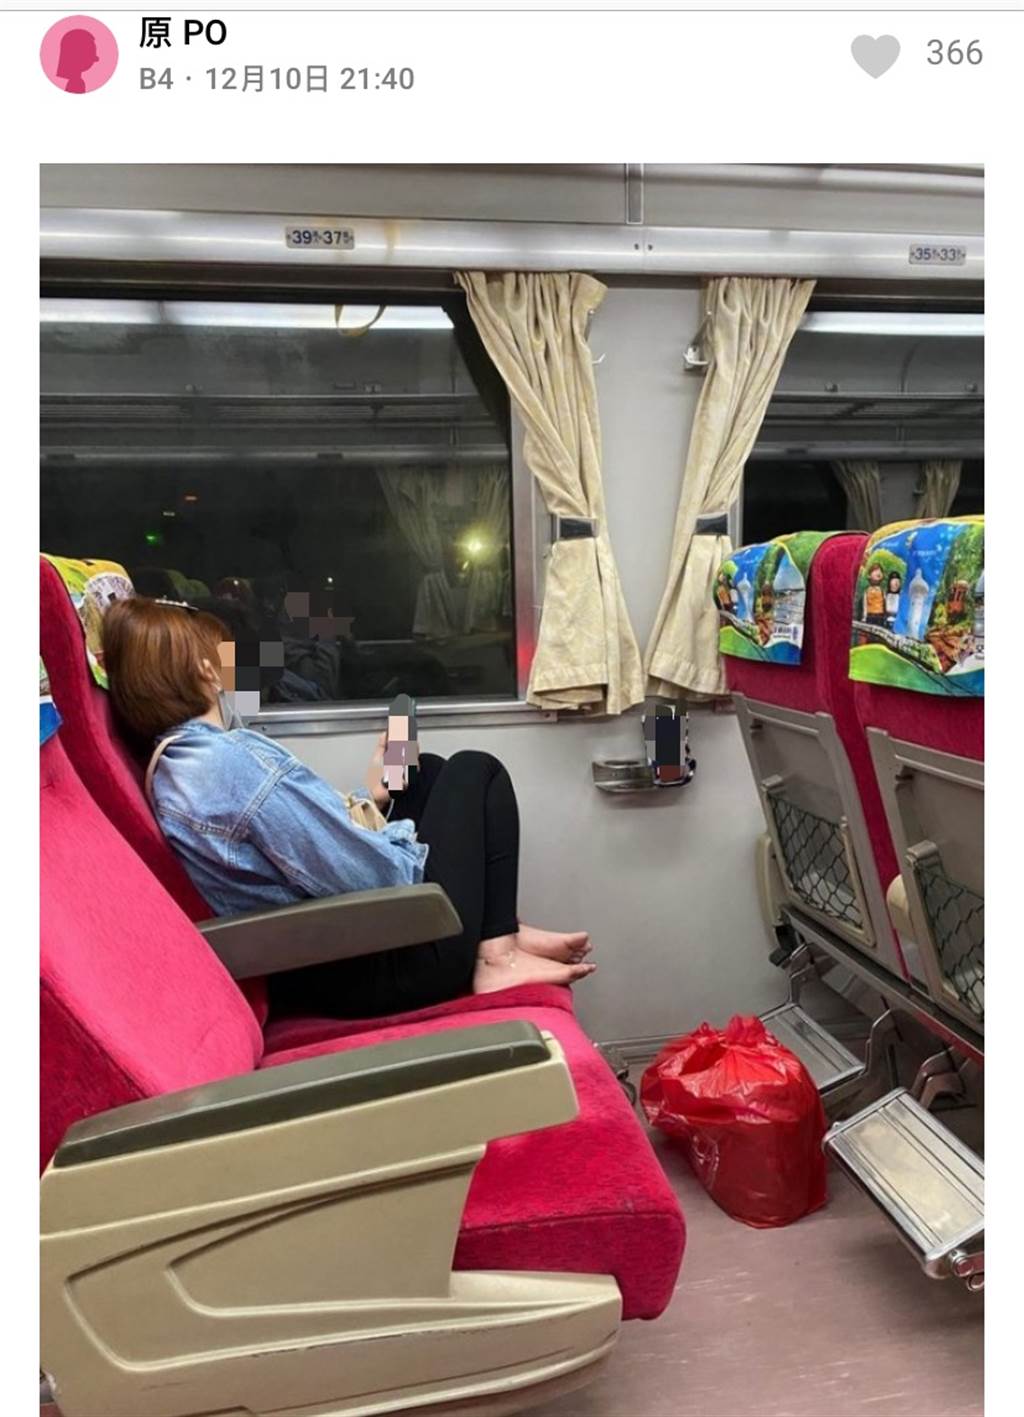 原PO貼出照片，可見該名乘客的誇張行為。(圖擷取自達志影像)